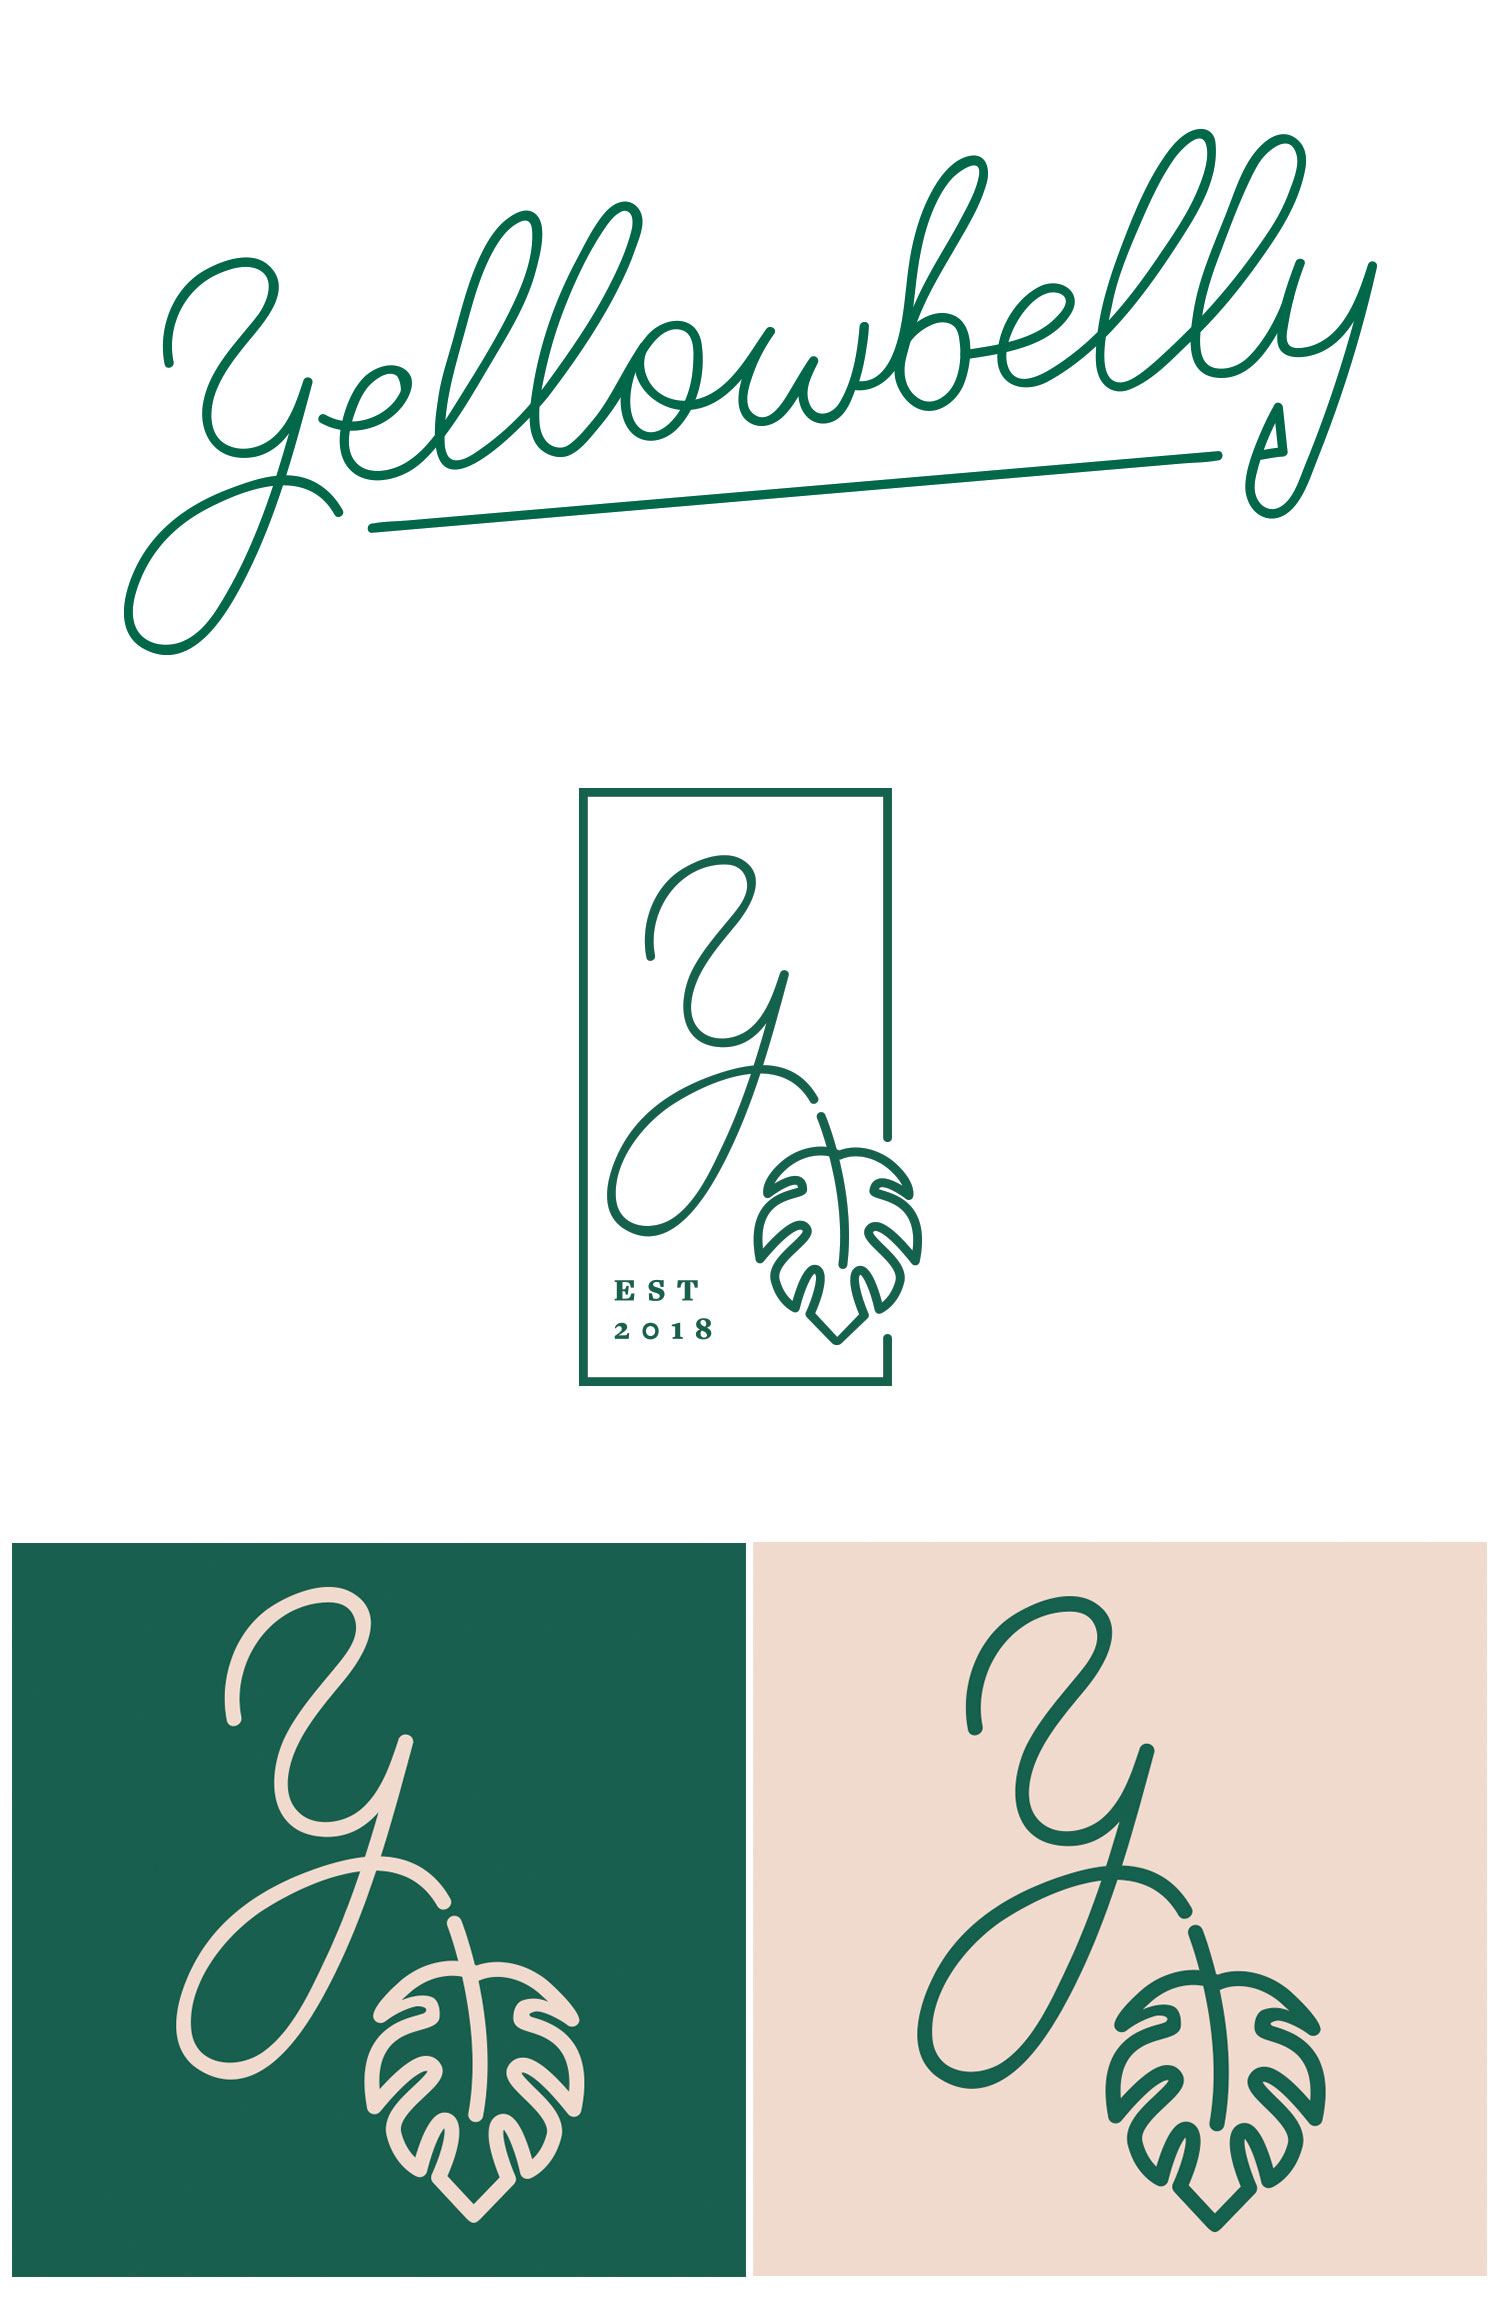 Yellowbelly logo design and restaurant branding